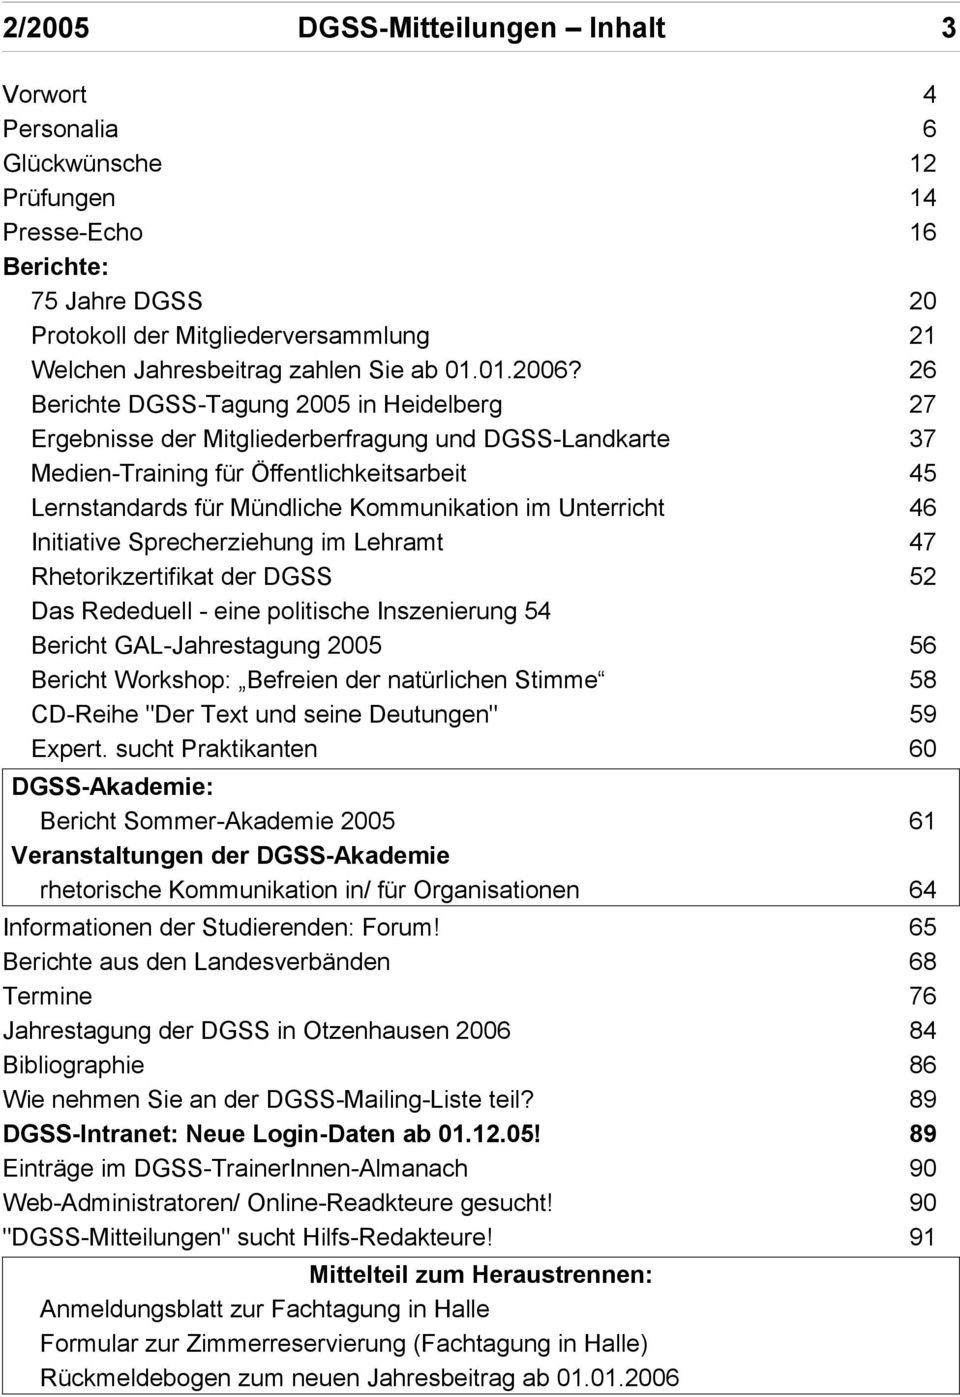 26 Berichte DGSS-Tagung 2005 in Heidelberg 27 Ergebnisse der Mitgliederberfragung und DGSS-Landkarte 37 Medien-Training für Öffentlichkeitsarbeit 45 Lernstandards für Mündliche Kommunikation im